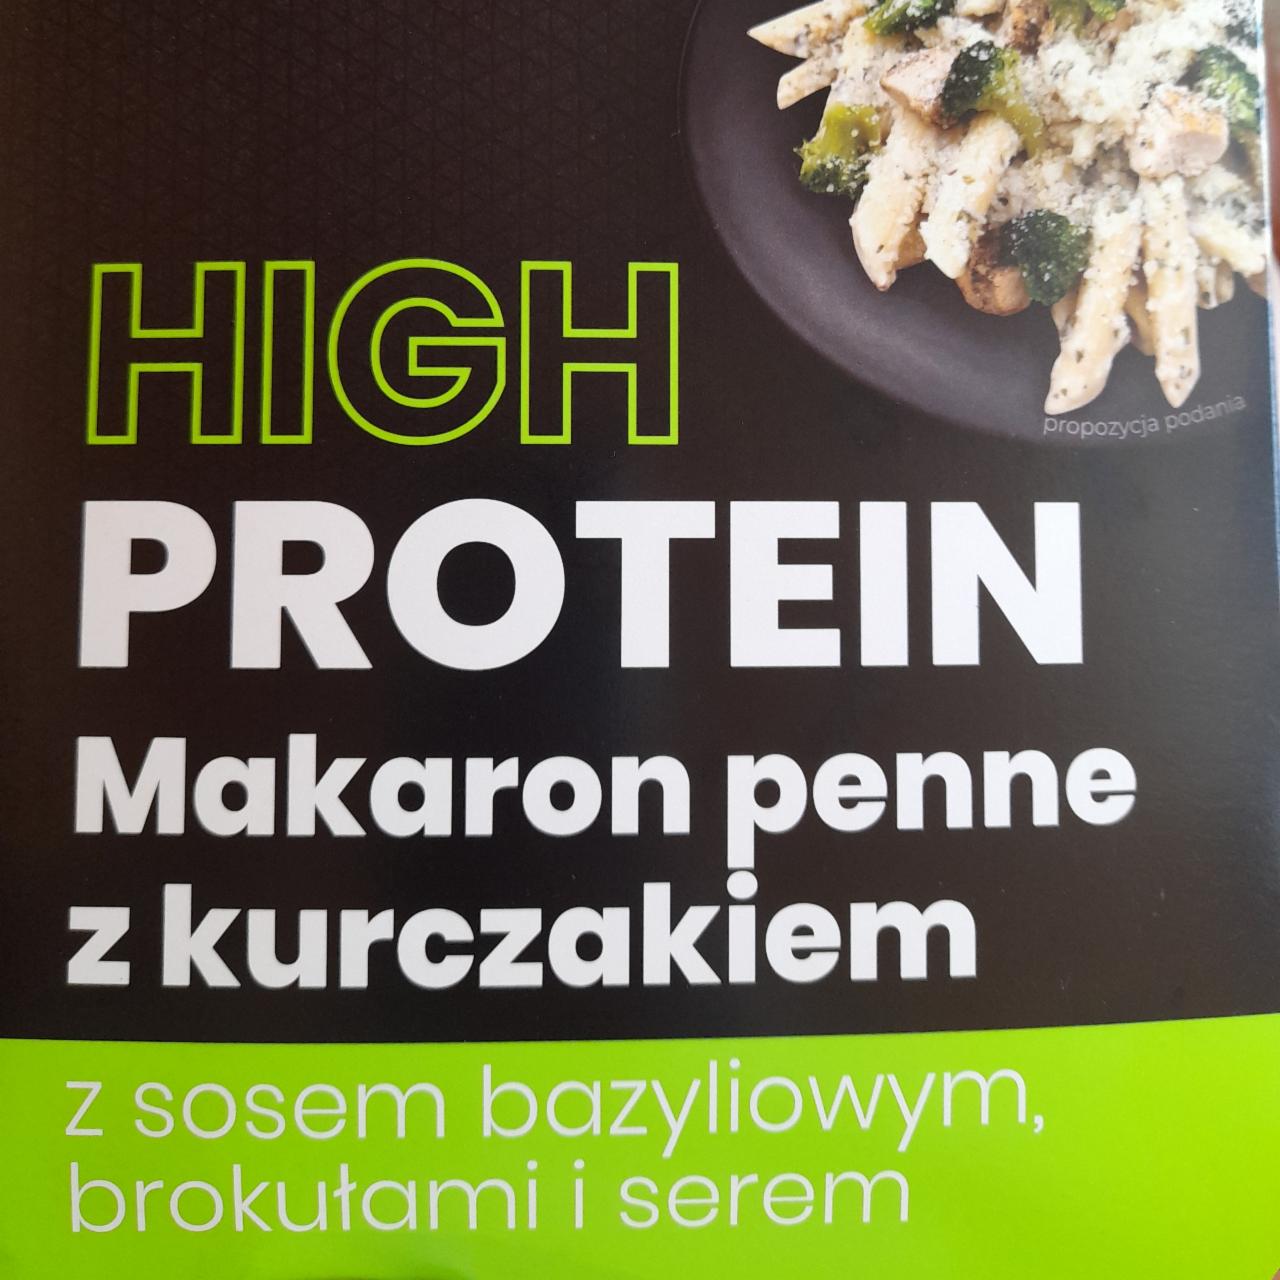 Fotografie - High Protein Makaron Penne z kurczakiem z sosem bazyliowym, brokułami i serem Virtu